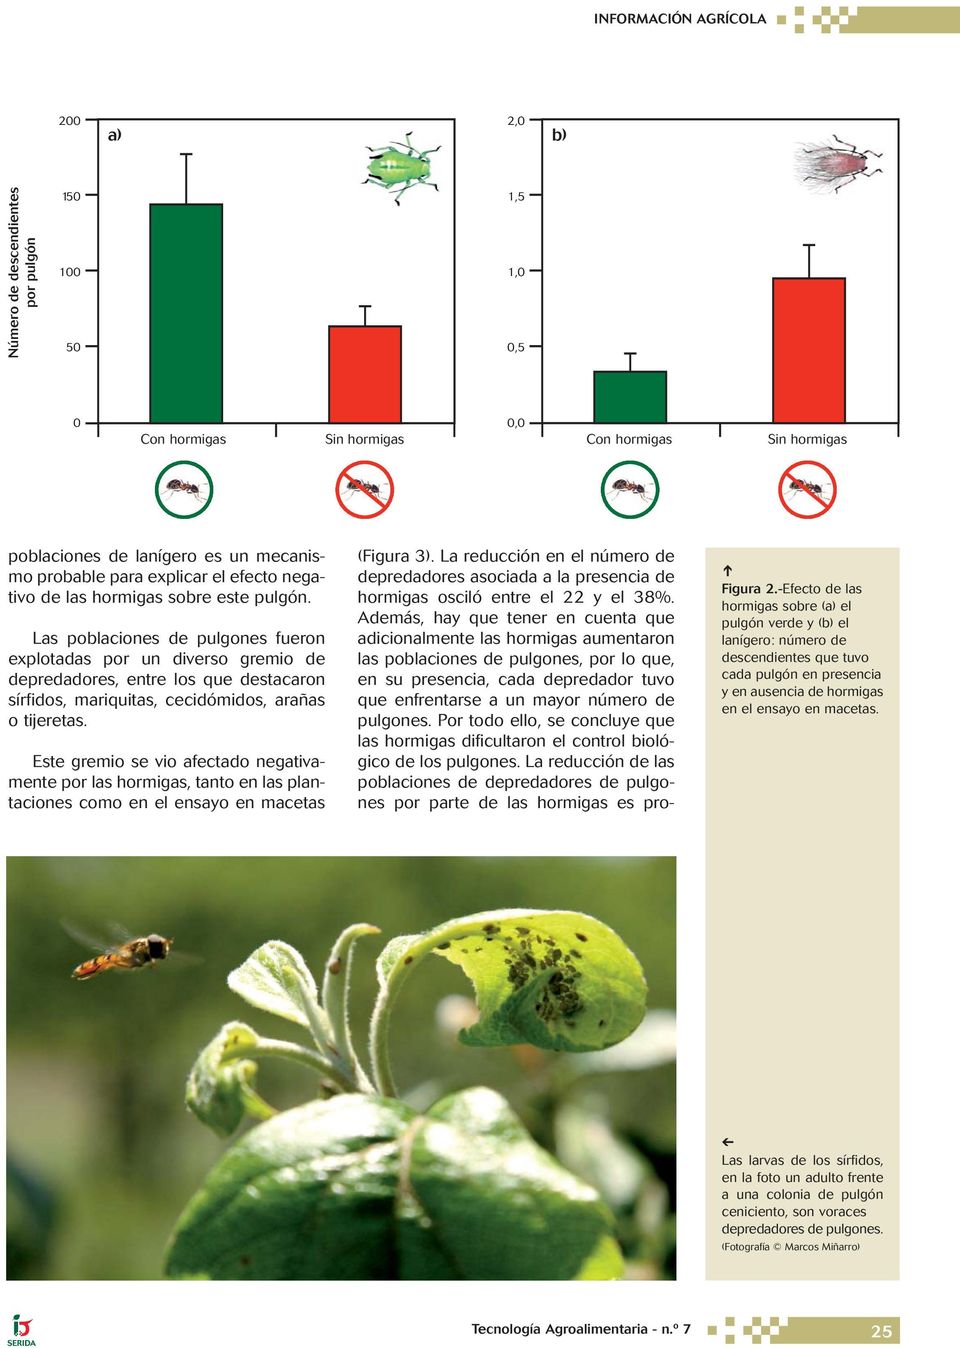 Este gremio se vio afectado negativamente por las hormigas, tanto en las plantaciones como en el ensayo en macetas (Figura 3).